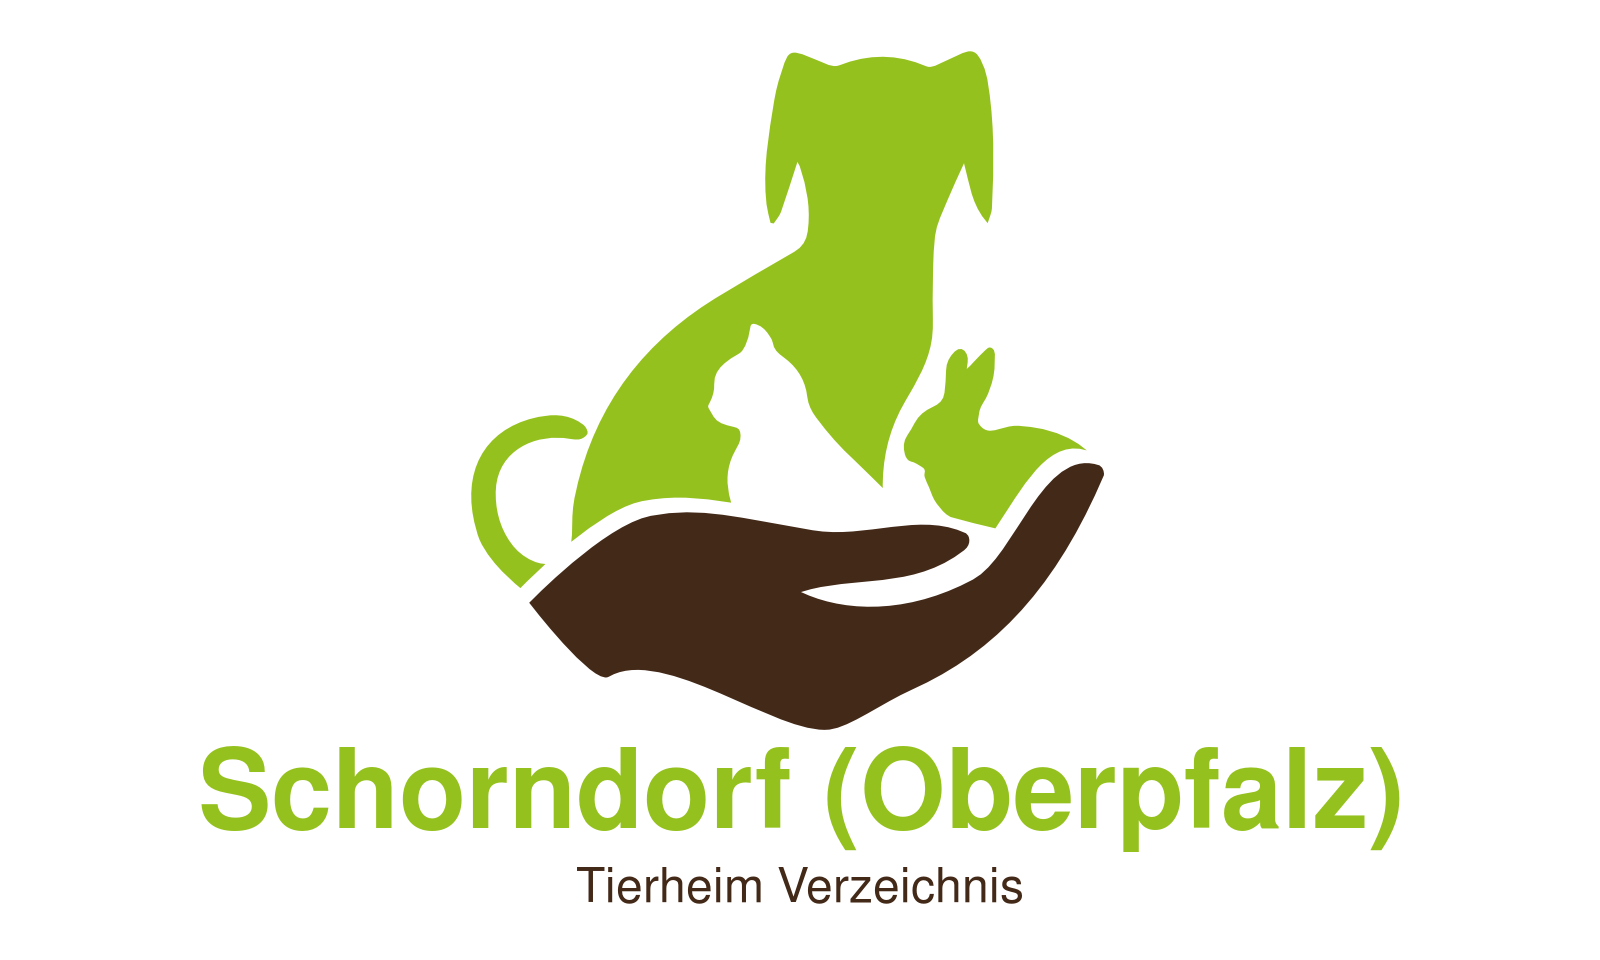 Tierheim Schorndorf (Oberpfalz)